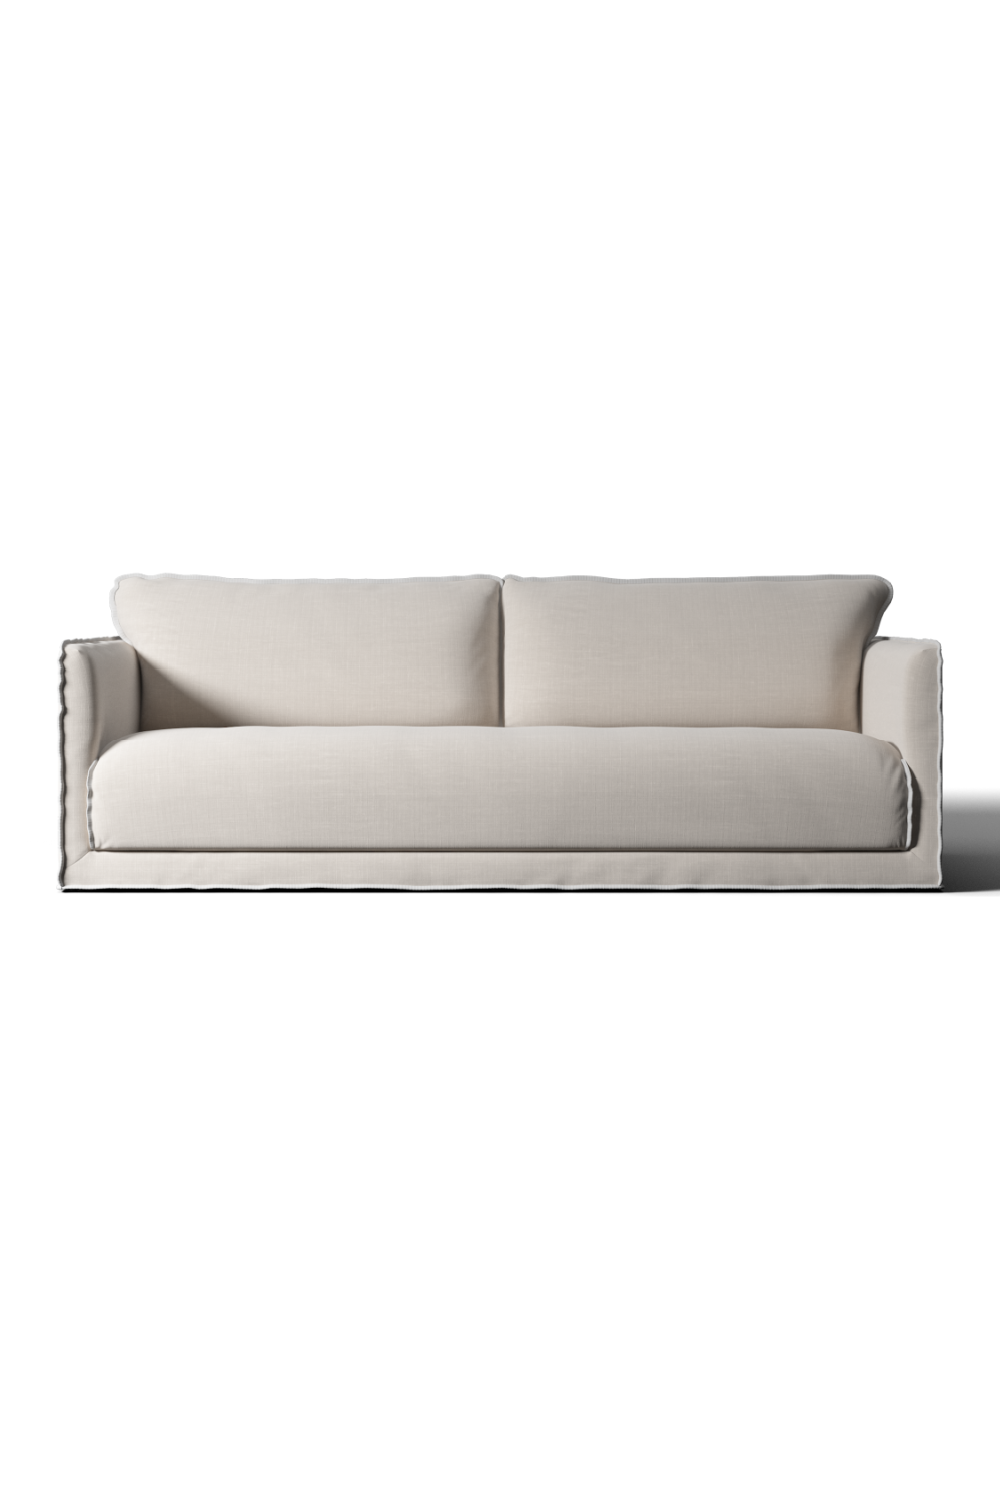 White Linen Sofa | Andrew Martin Whitecliff | Oroa.com